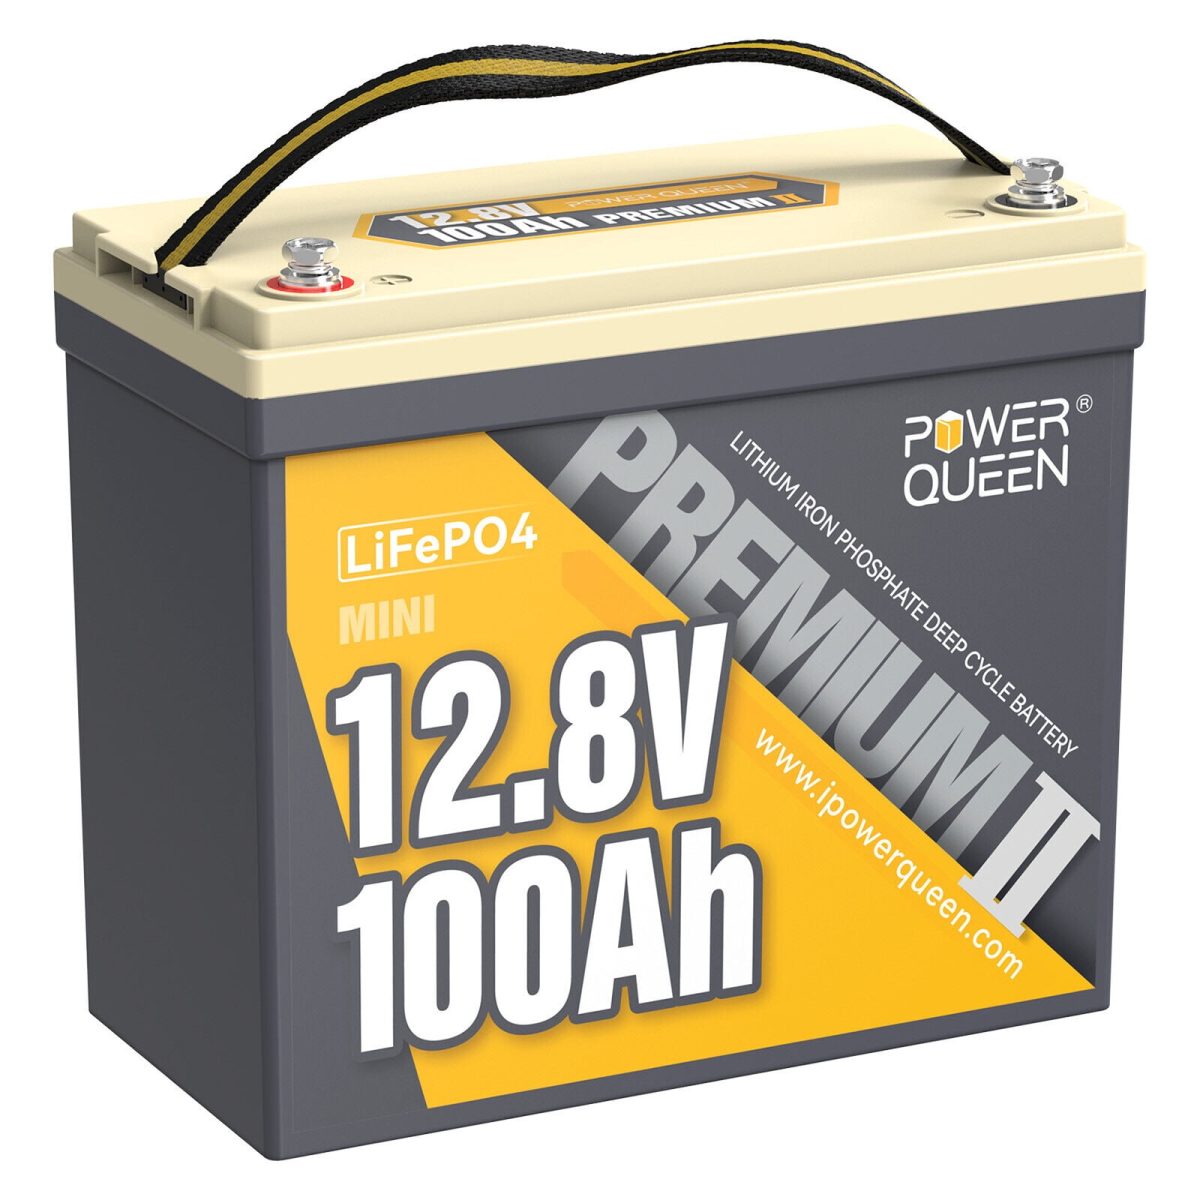 Lithium Akku LiFePO4 12.8V/100Ah Wohnmobil